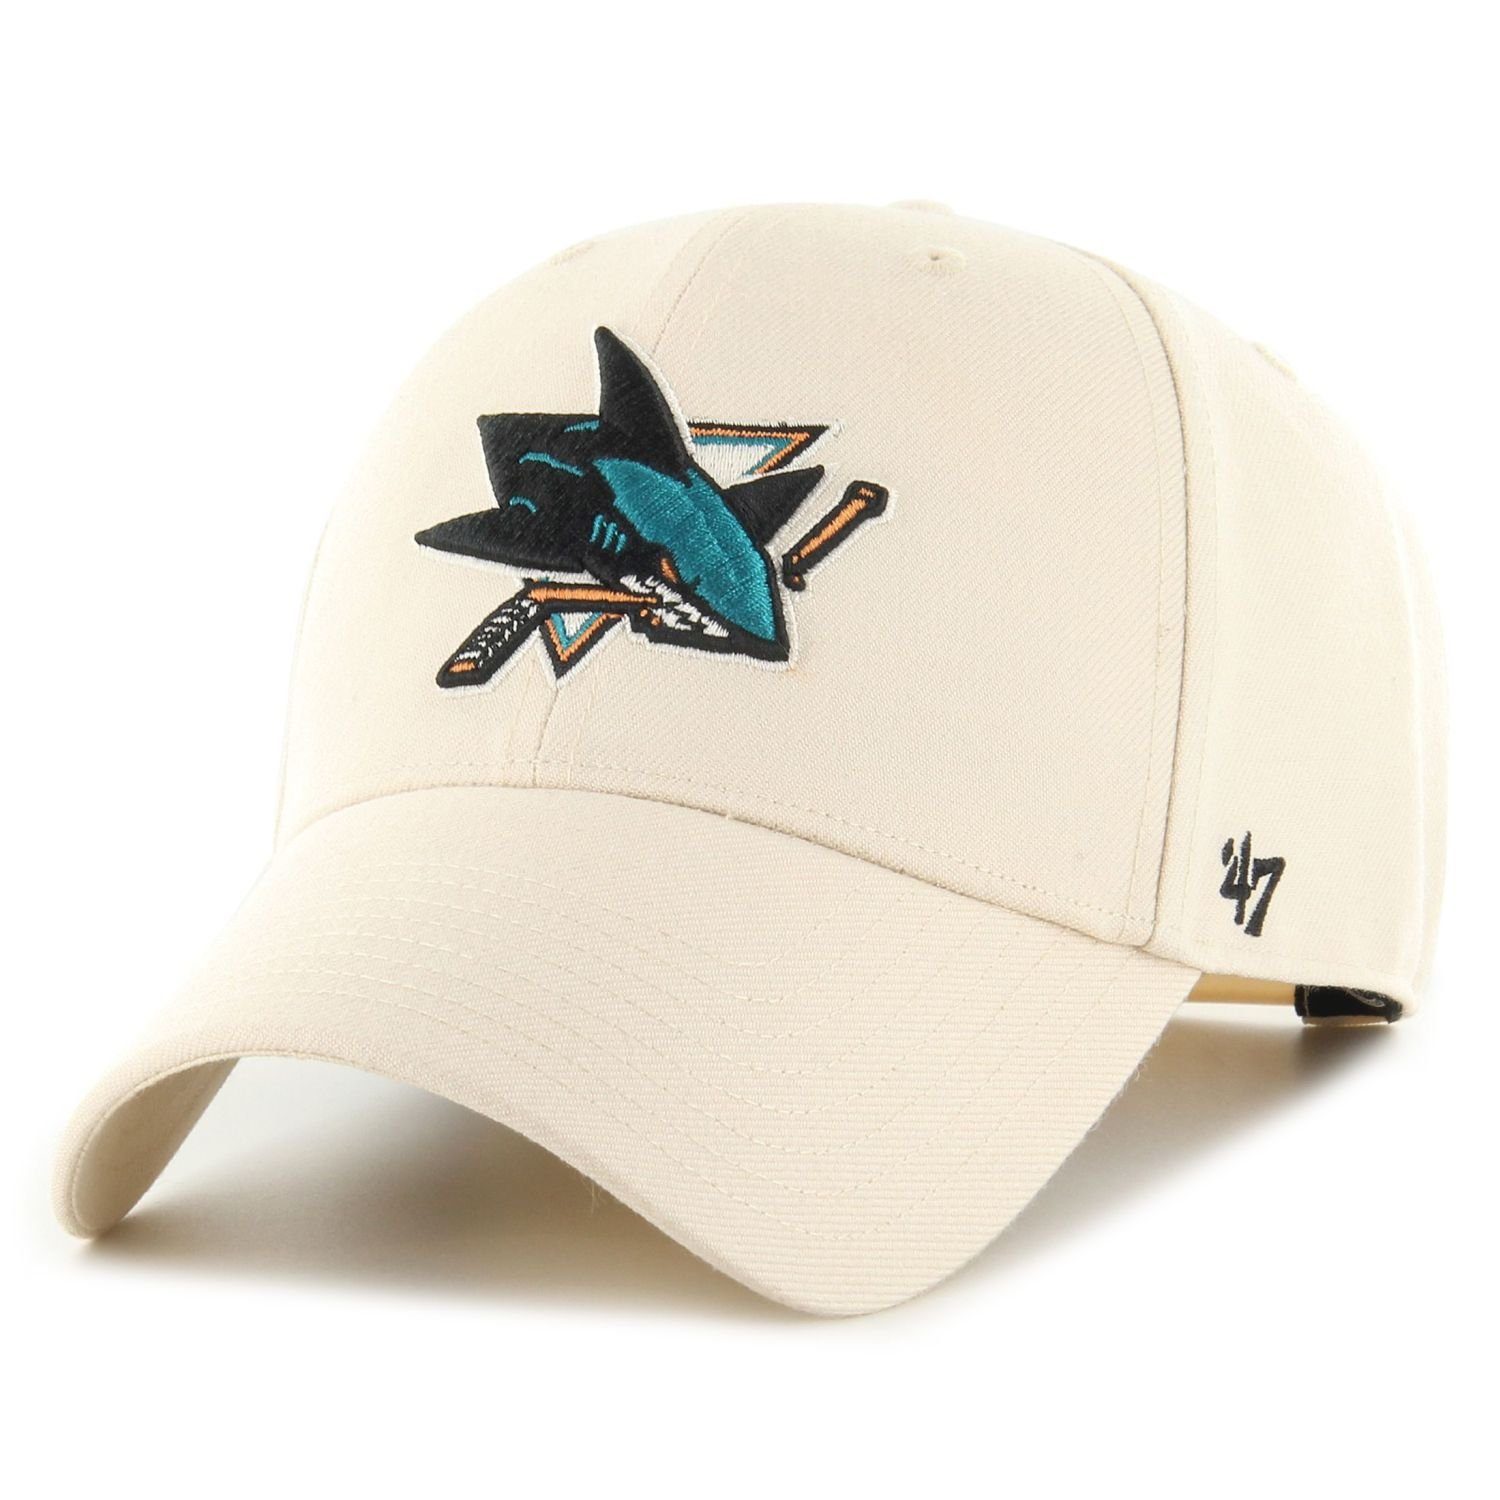 Jose Brand San Cap '47 Snapback NHL Sharks